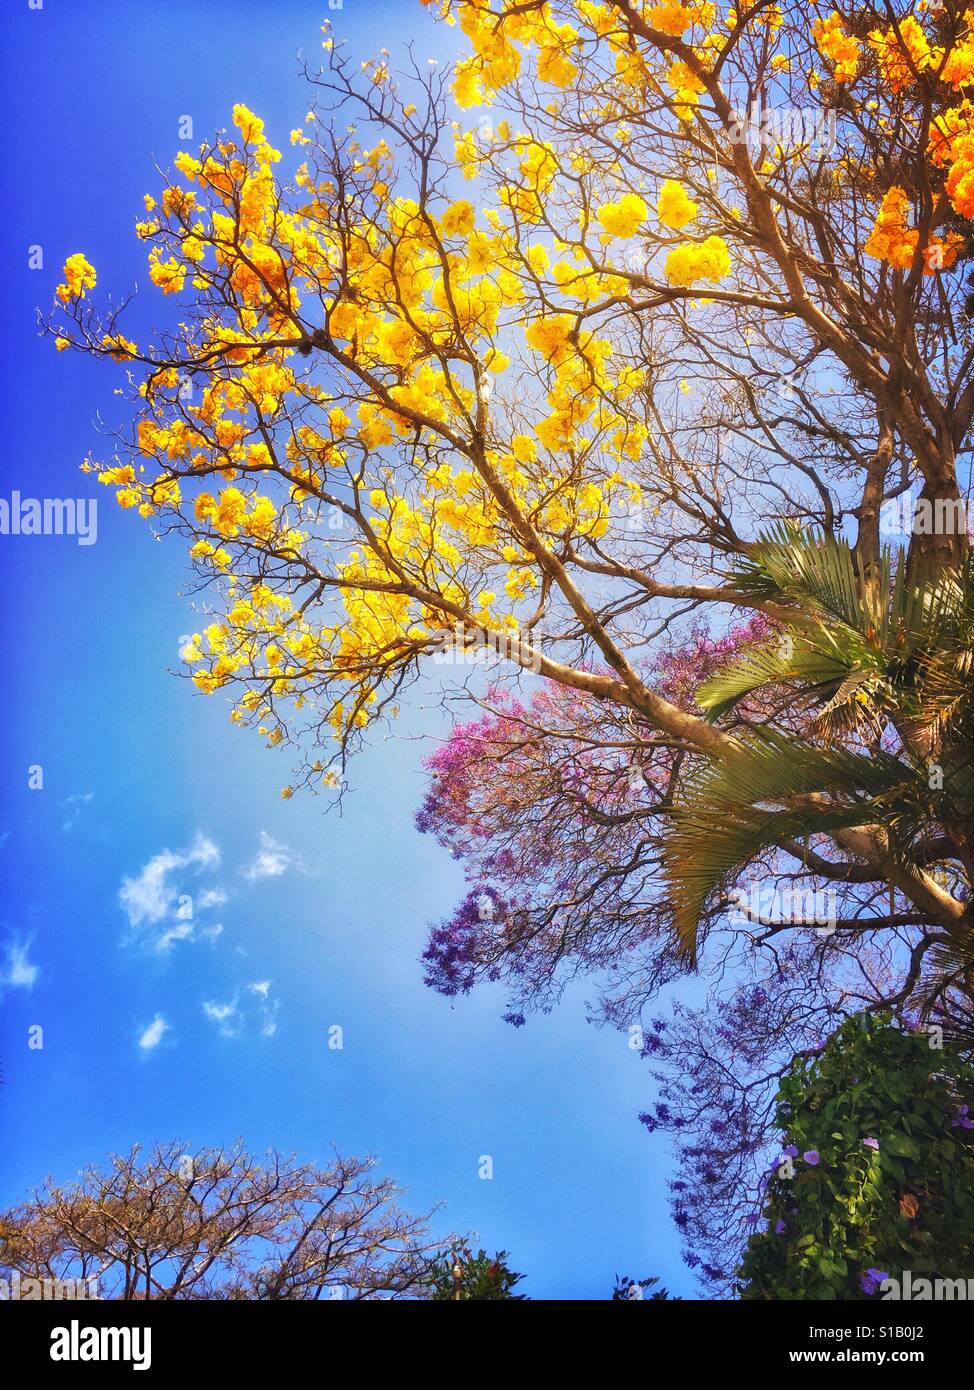 Tabebuia und Jacarandabäume füllen den Himmel mit gelb und lila Blüten, die die Ankunft des Frühlings bedeuten. Stockfoto